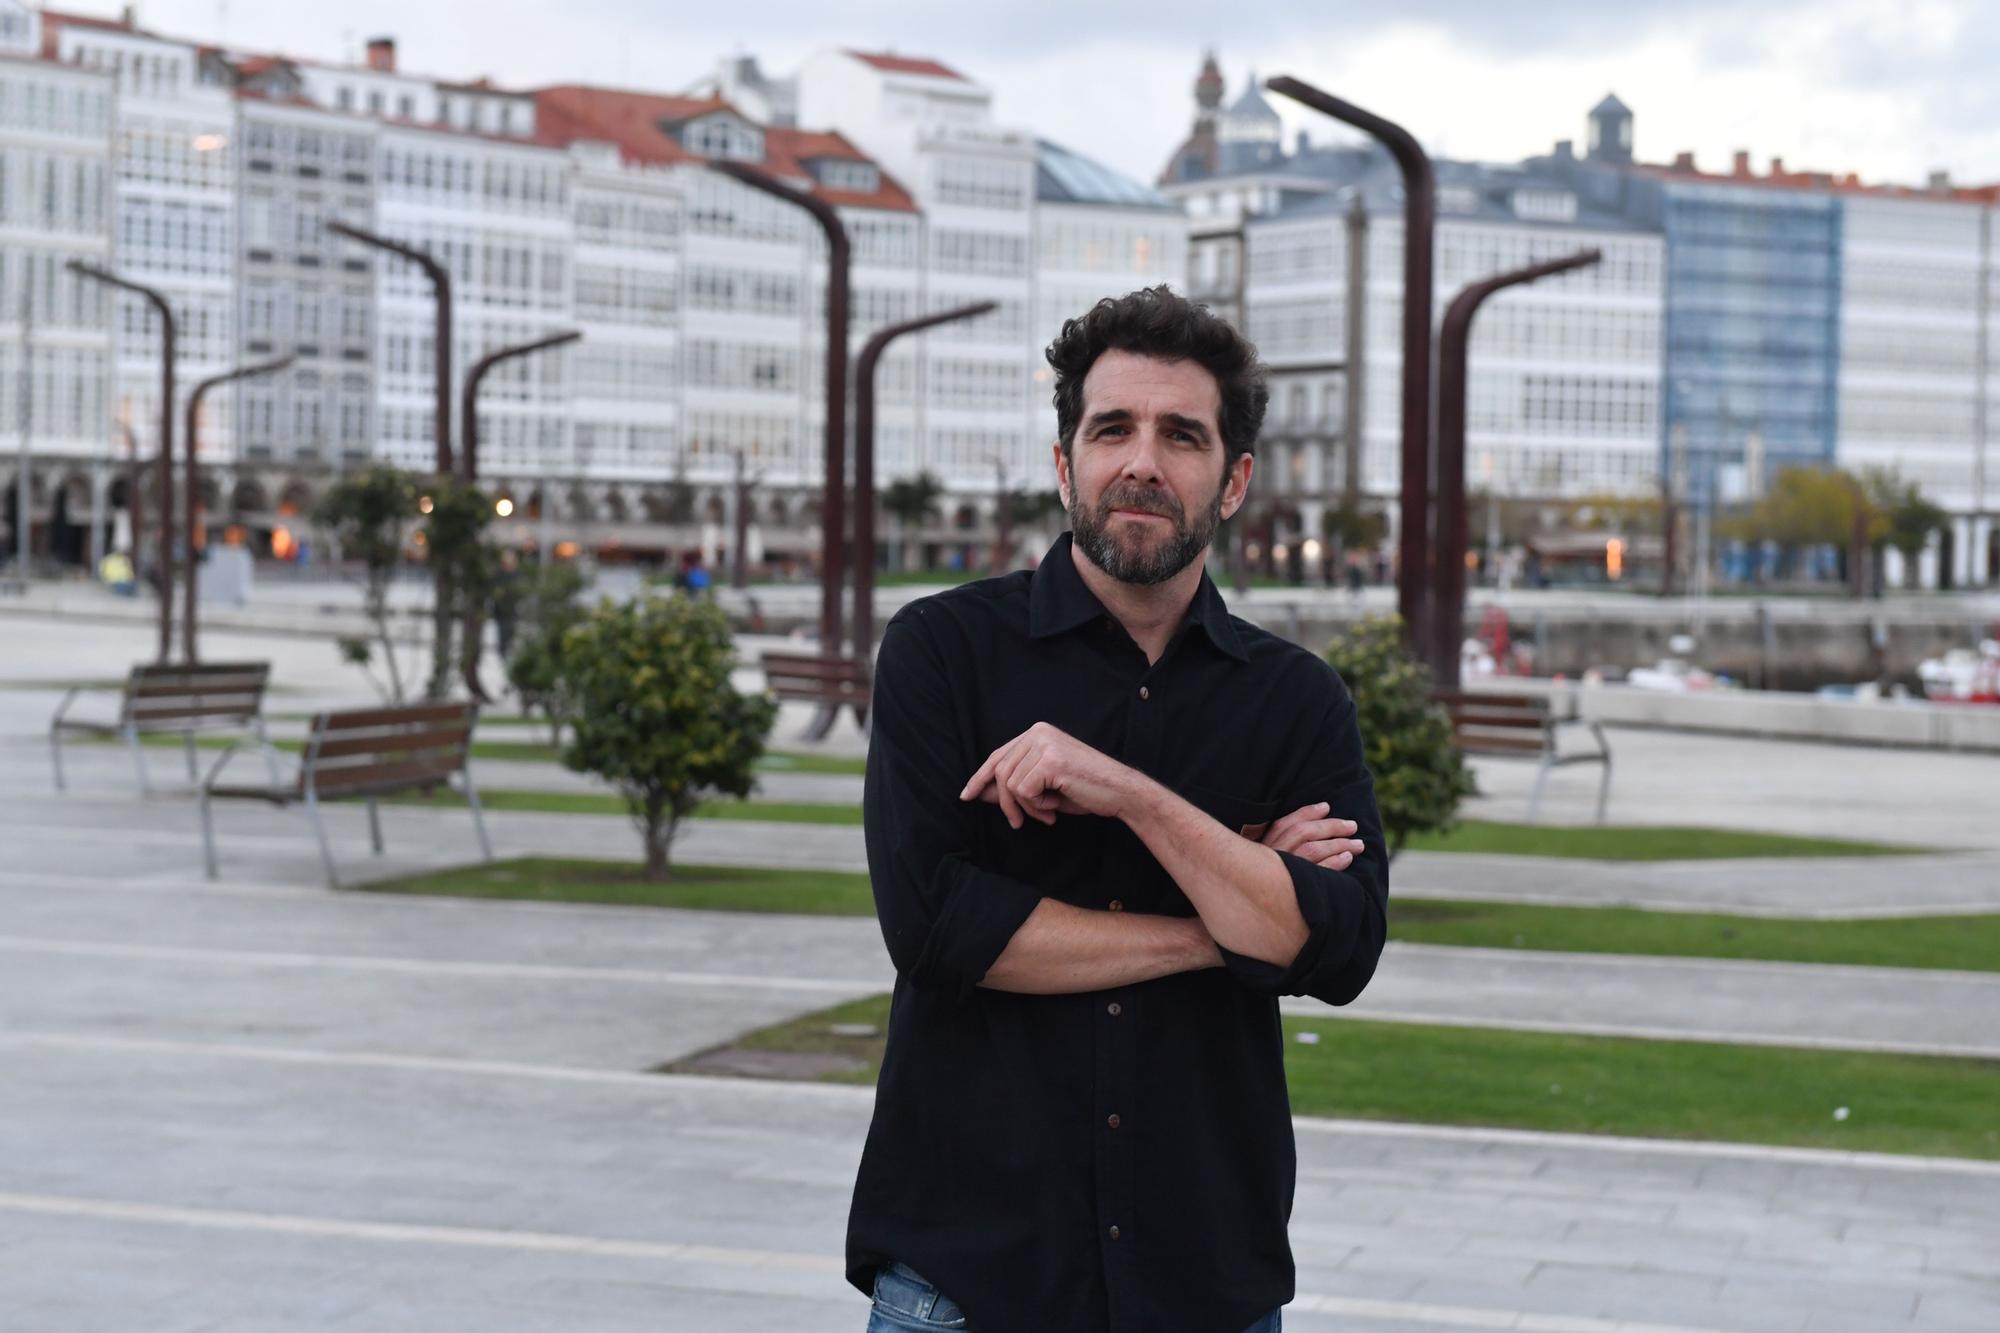 Gonzo preestrena en A Coruña un especial de 'Salvados' sobre la catástrofe del 'Prestige'